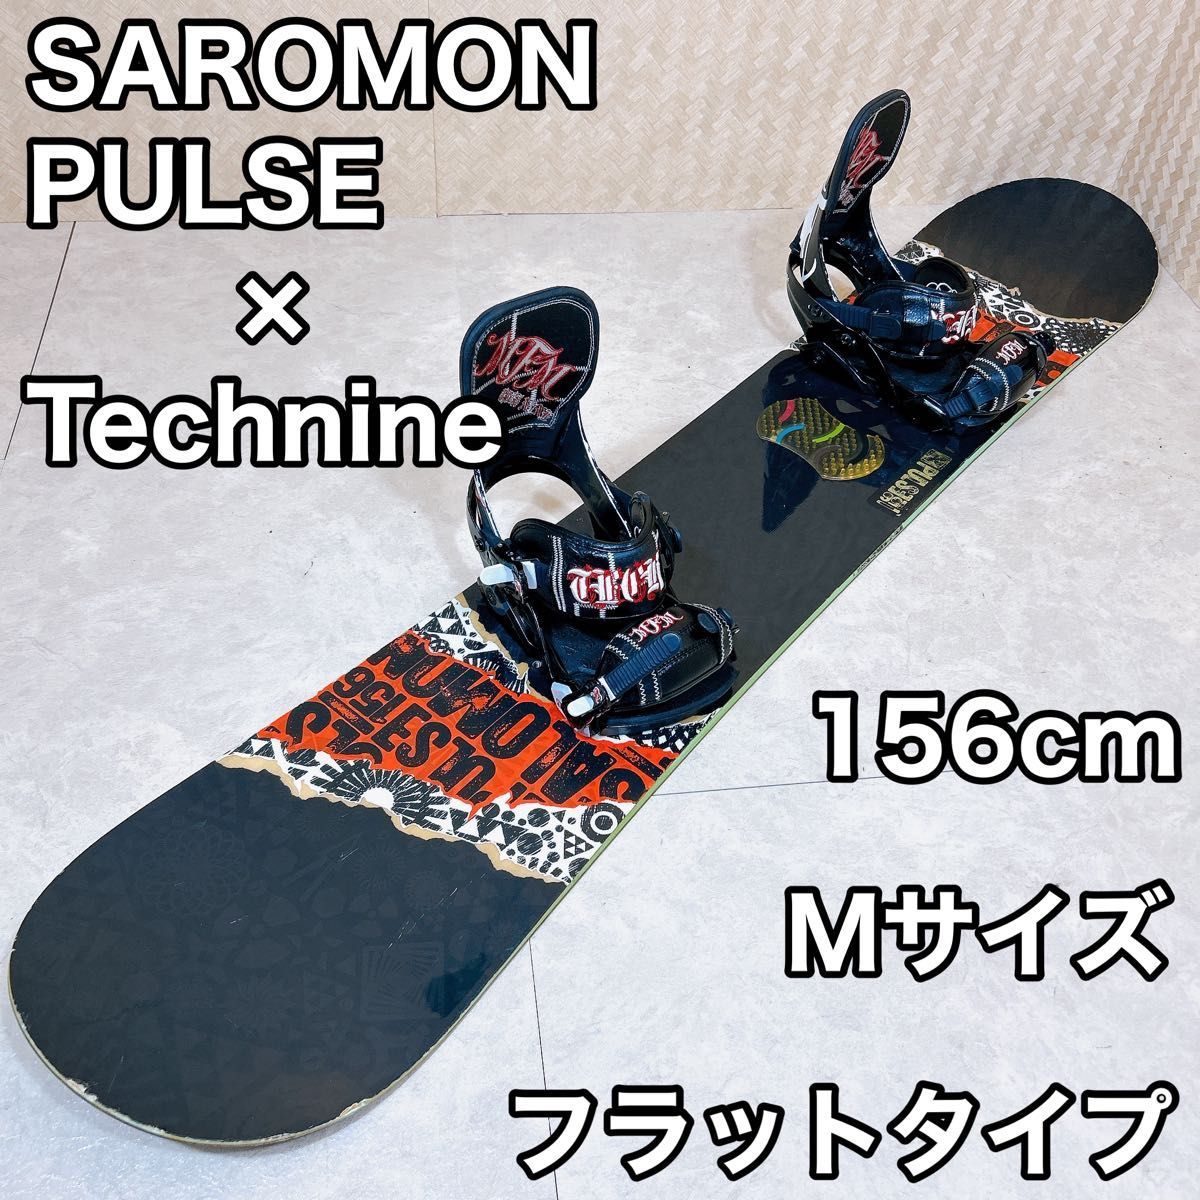 【初心者おすすめ 】 SALOMON スノーボードセット 156cm